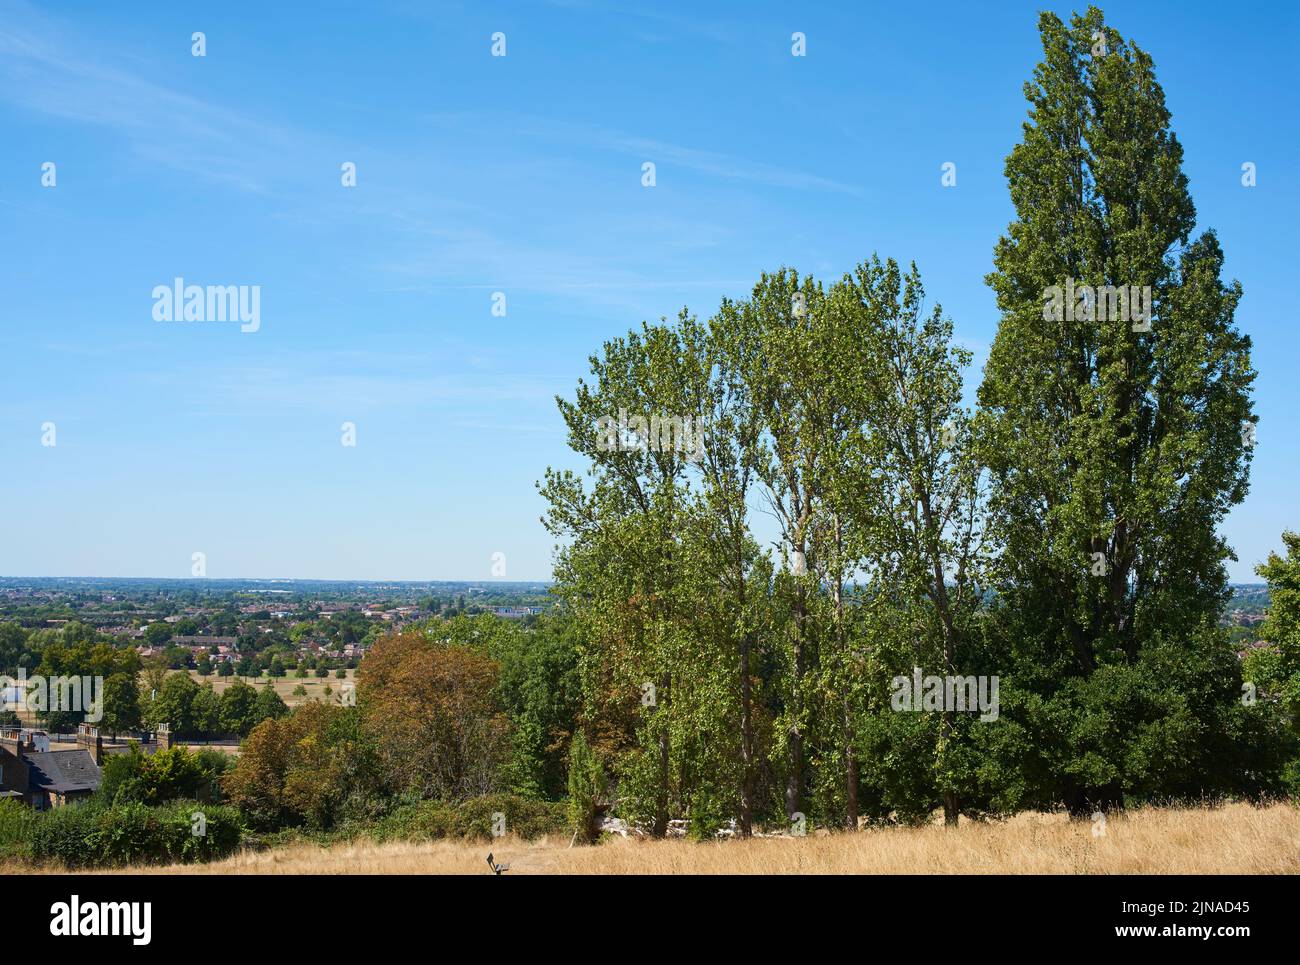 Vista de la campiña de Buckinghamshire en verano desde Harrow-on-the-Hill, Gran Londres, Reino Unido Foto de stock